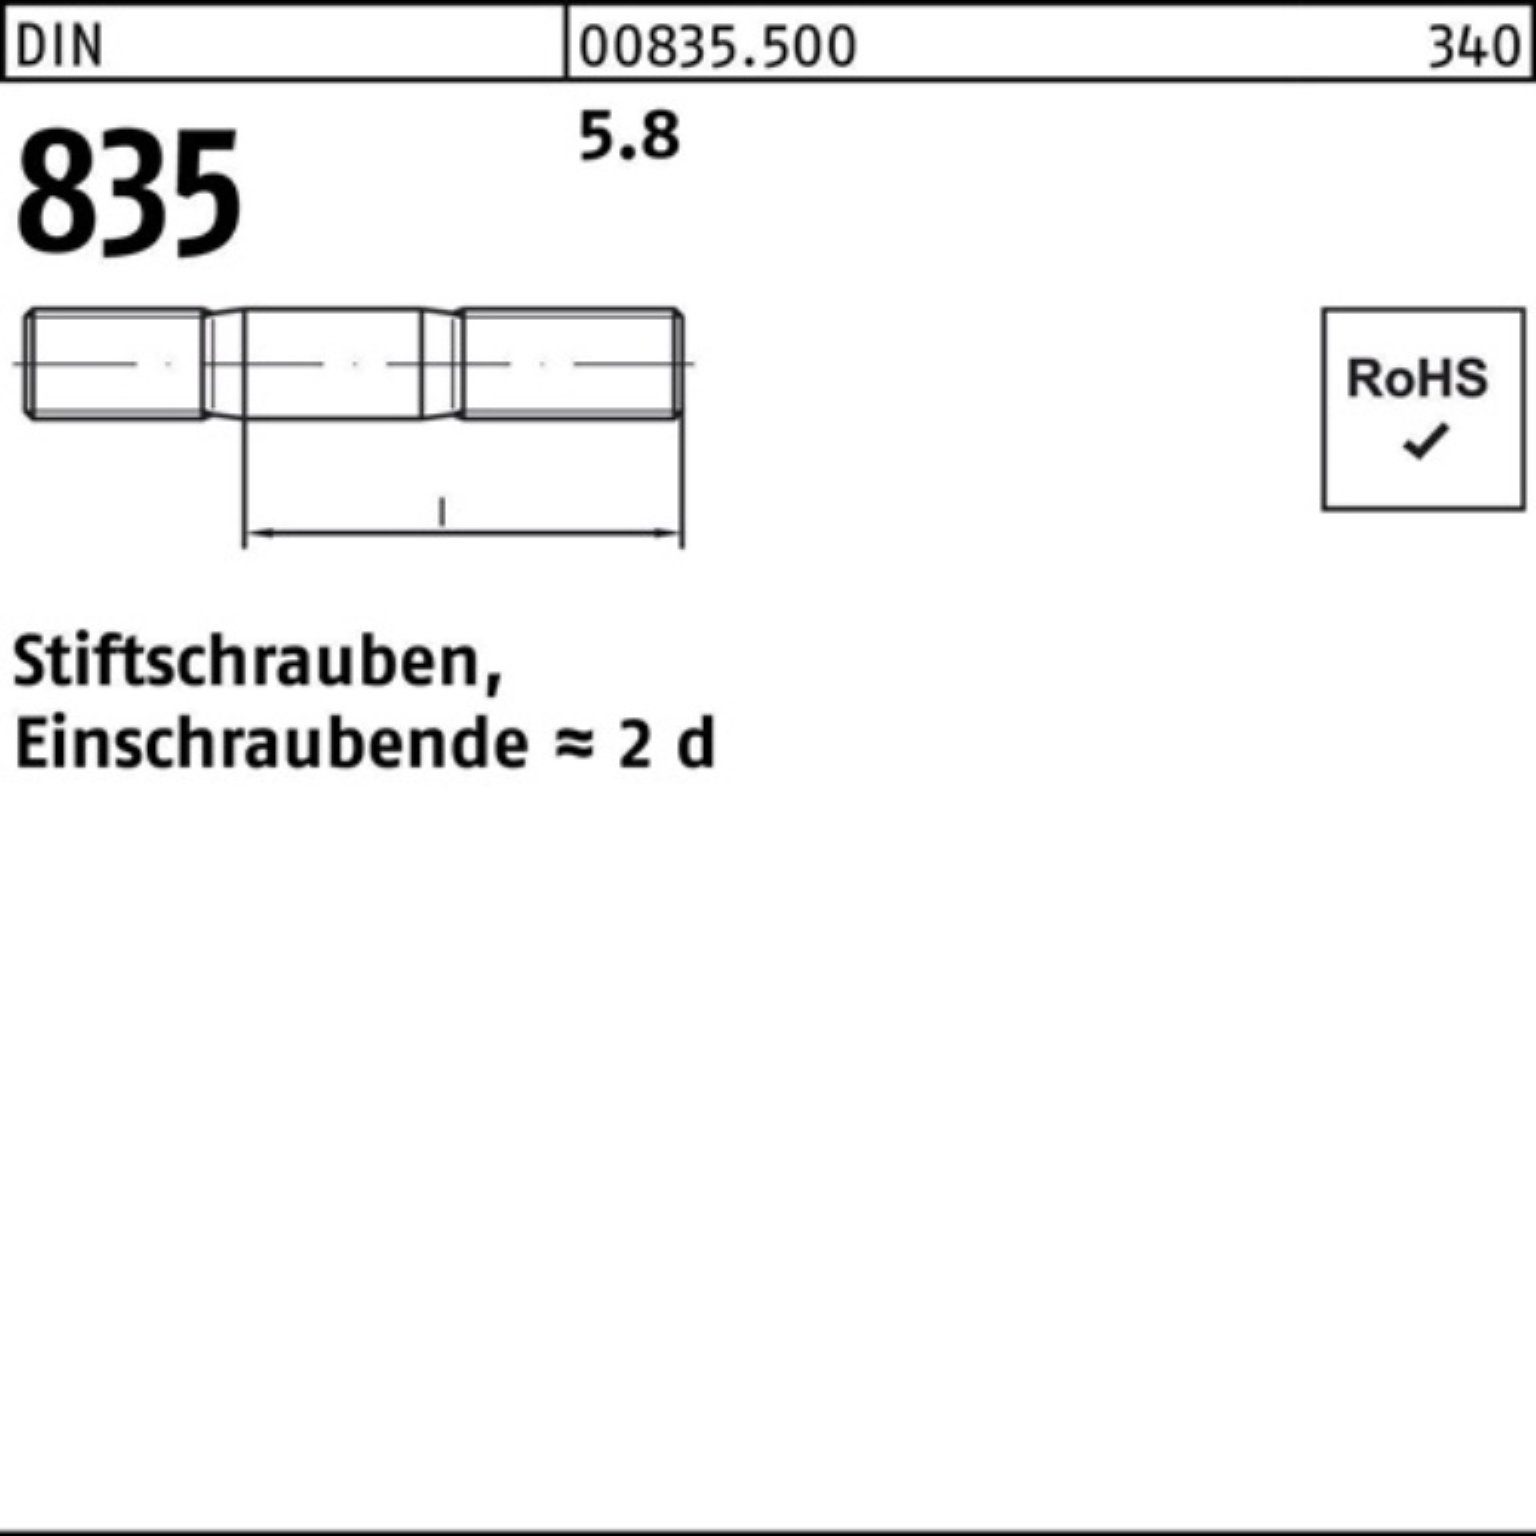 Reyher Stiftschraube 5.8 100 100er DIN Pack M6x 835 Stiftschraube Stü Einschraubende=2d 45